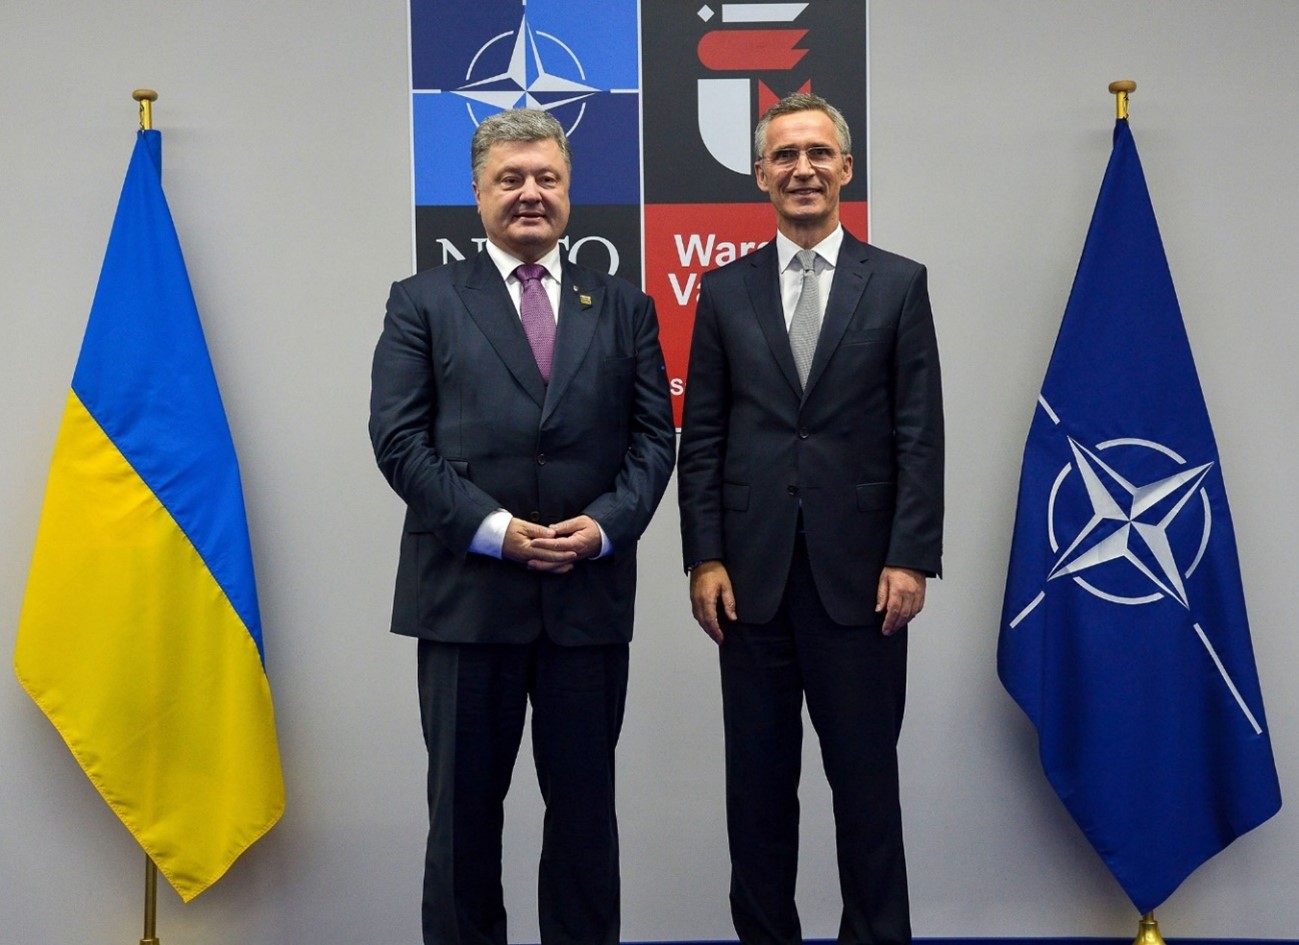 Apoyo político y militar de Occidente a Ucrania 2014-2022